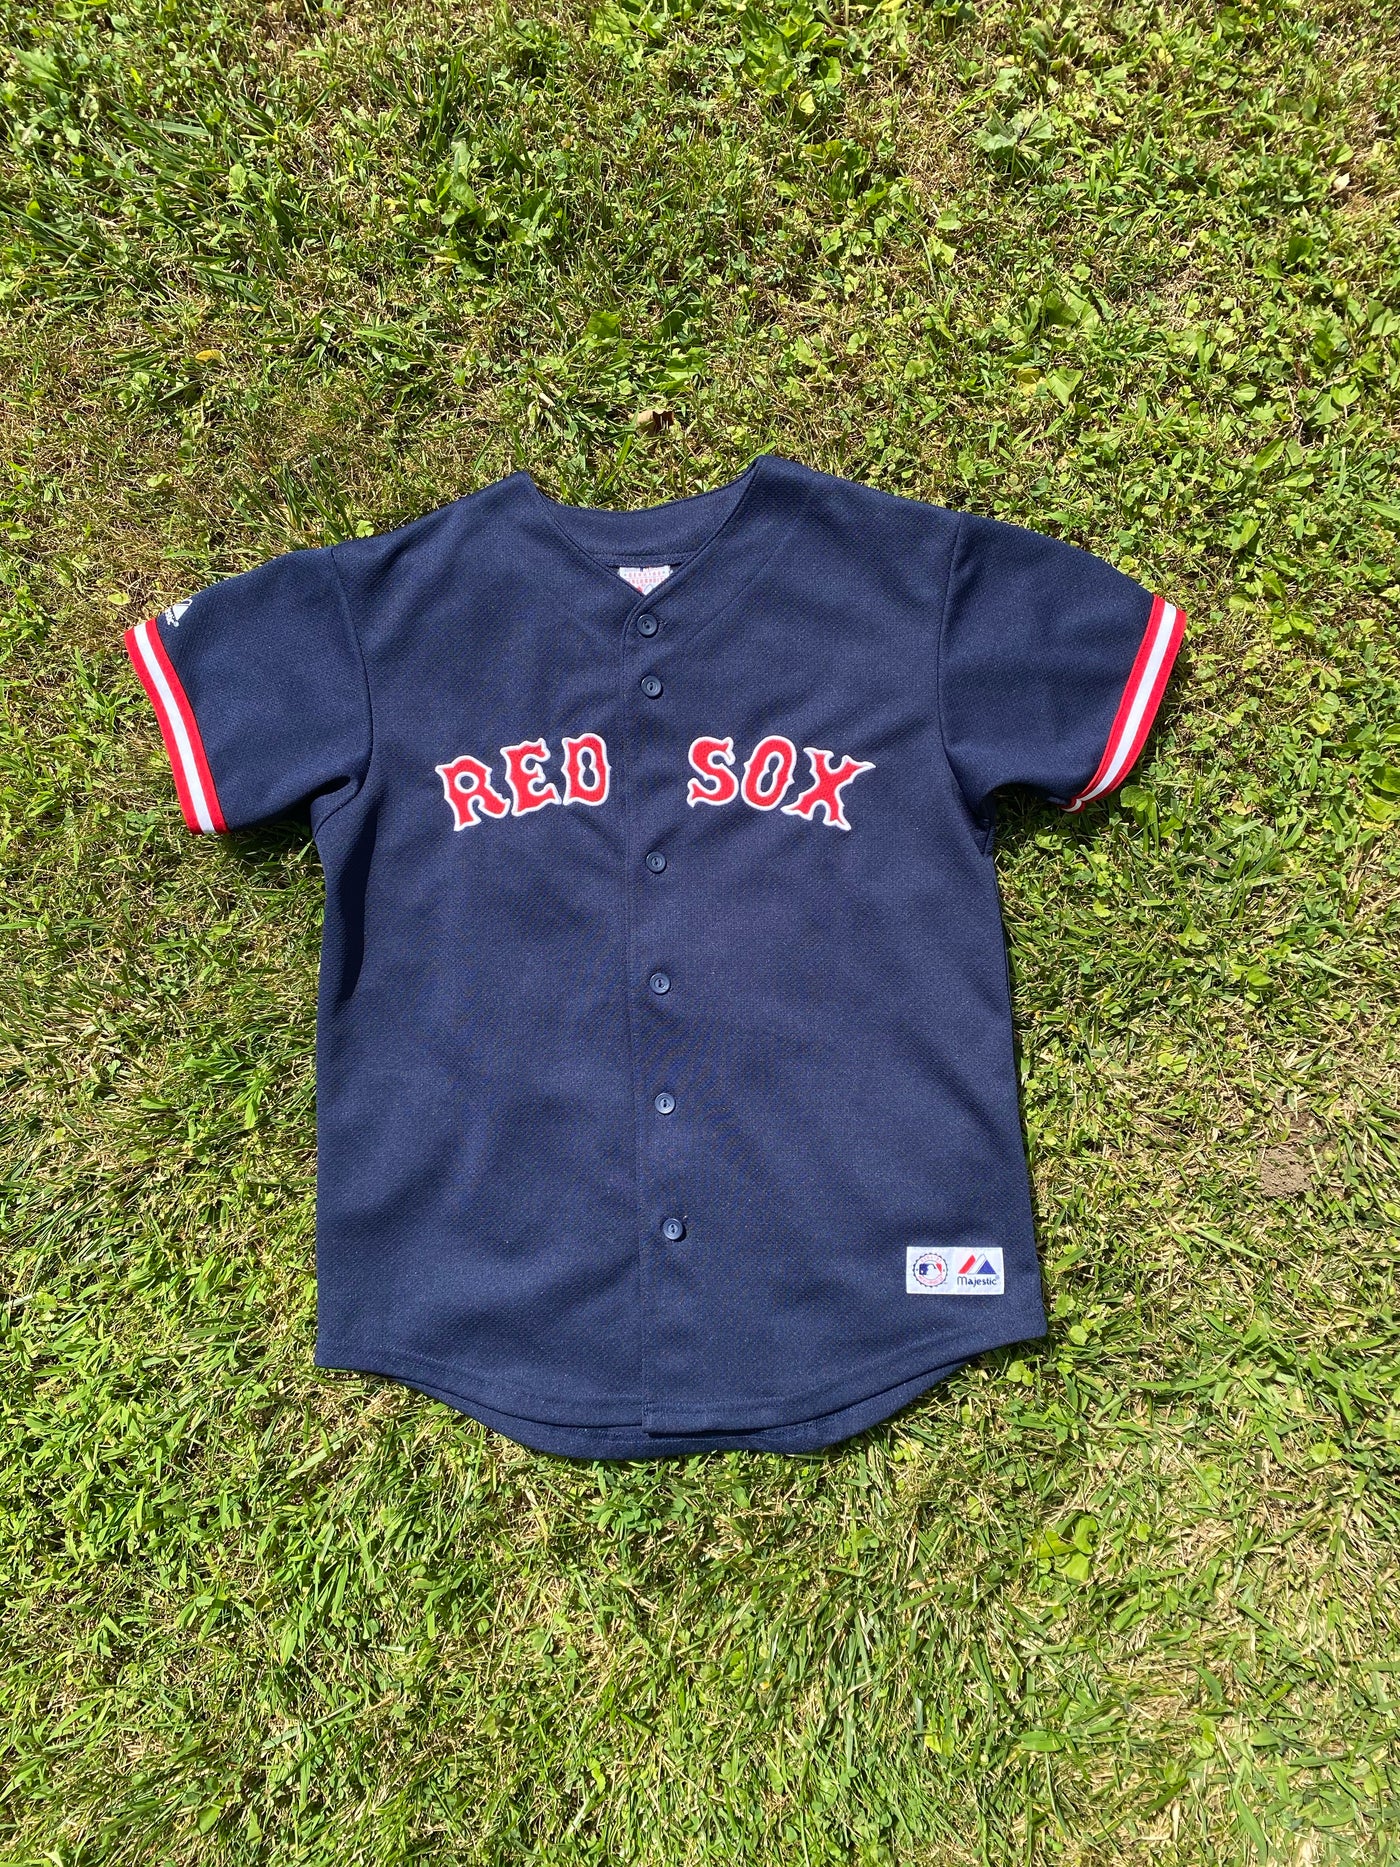 Vintage Nomar Garciaparra Red Sox Jersey